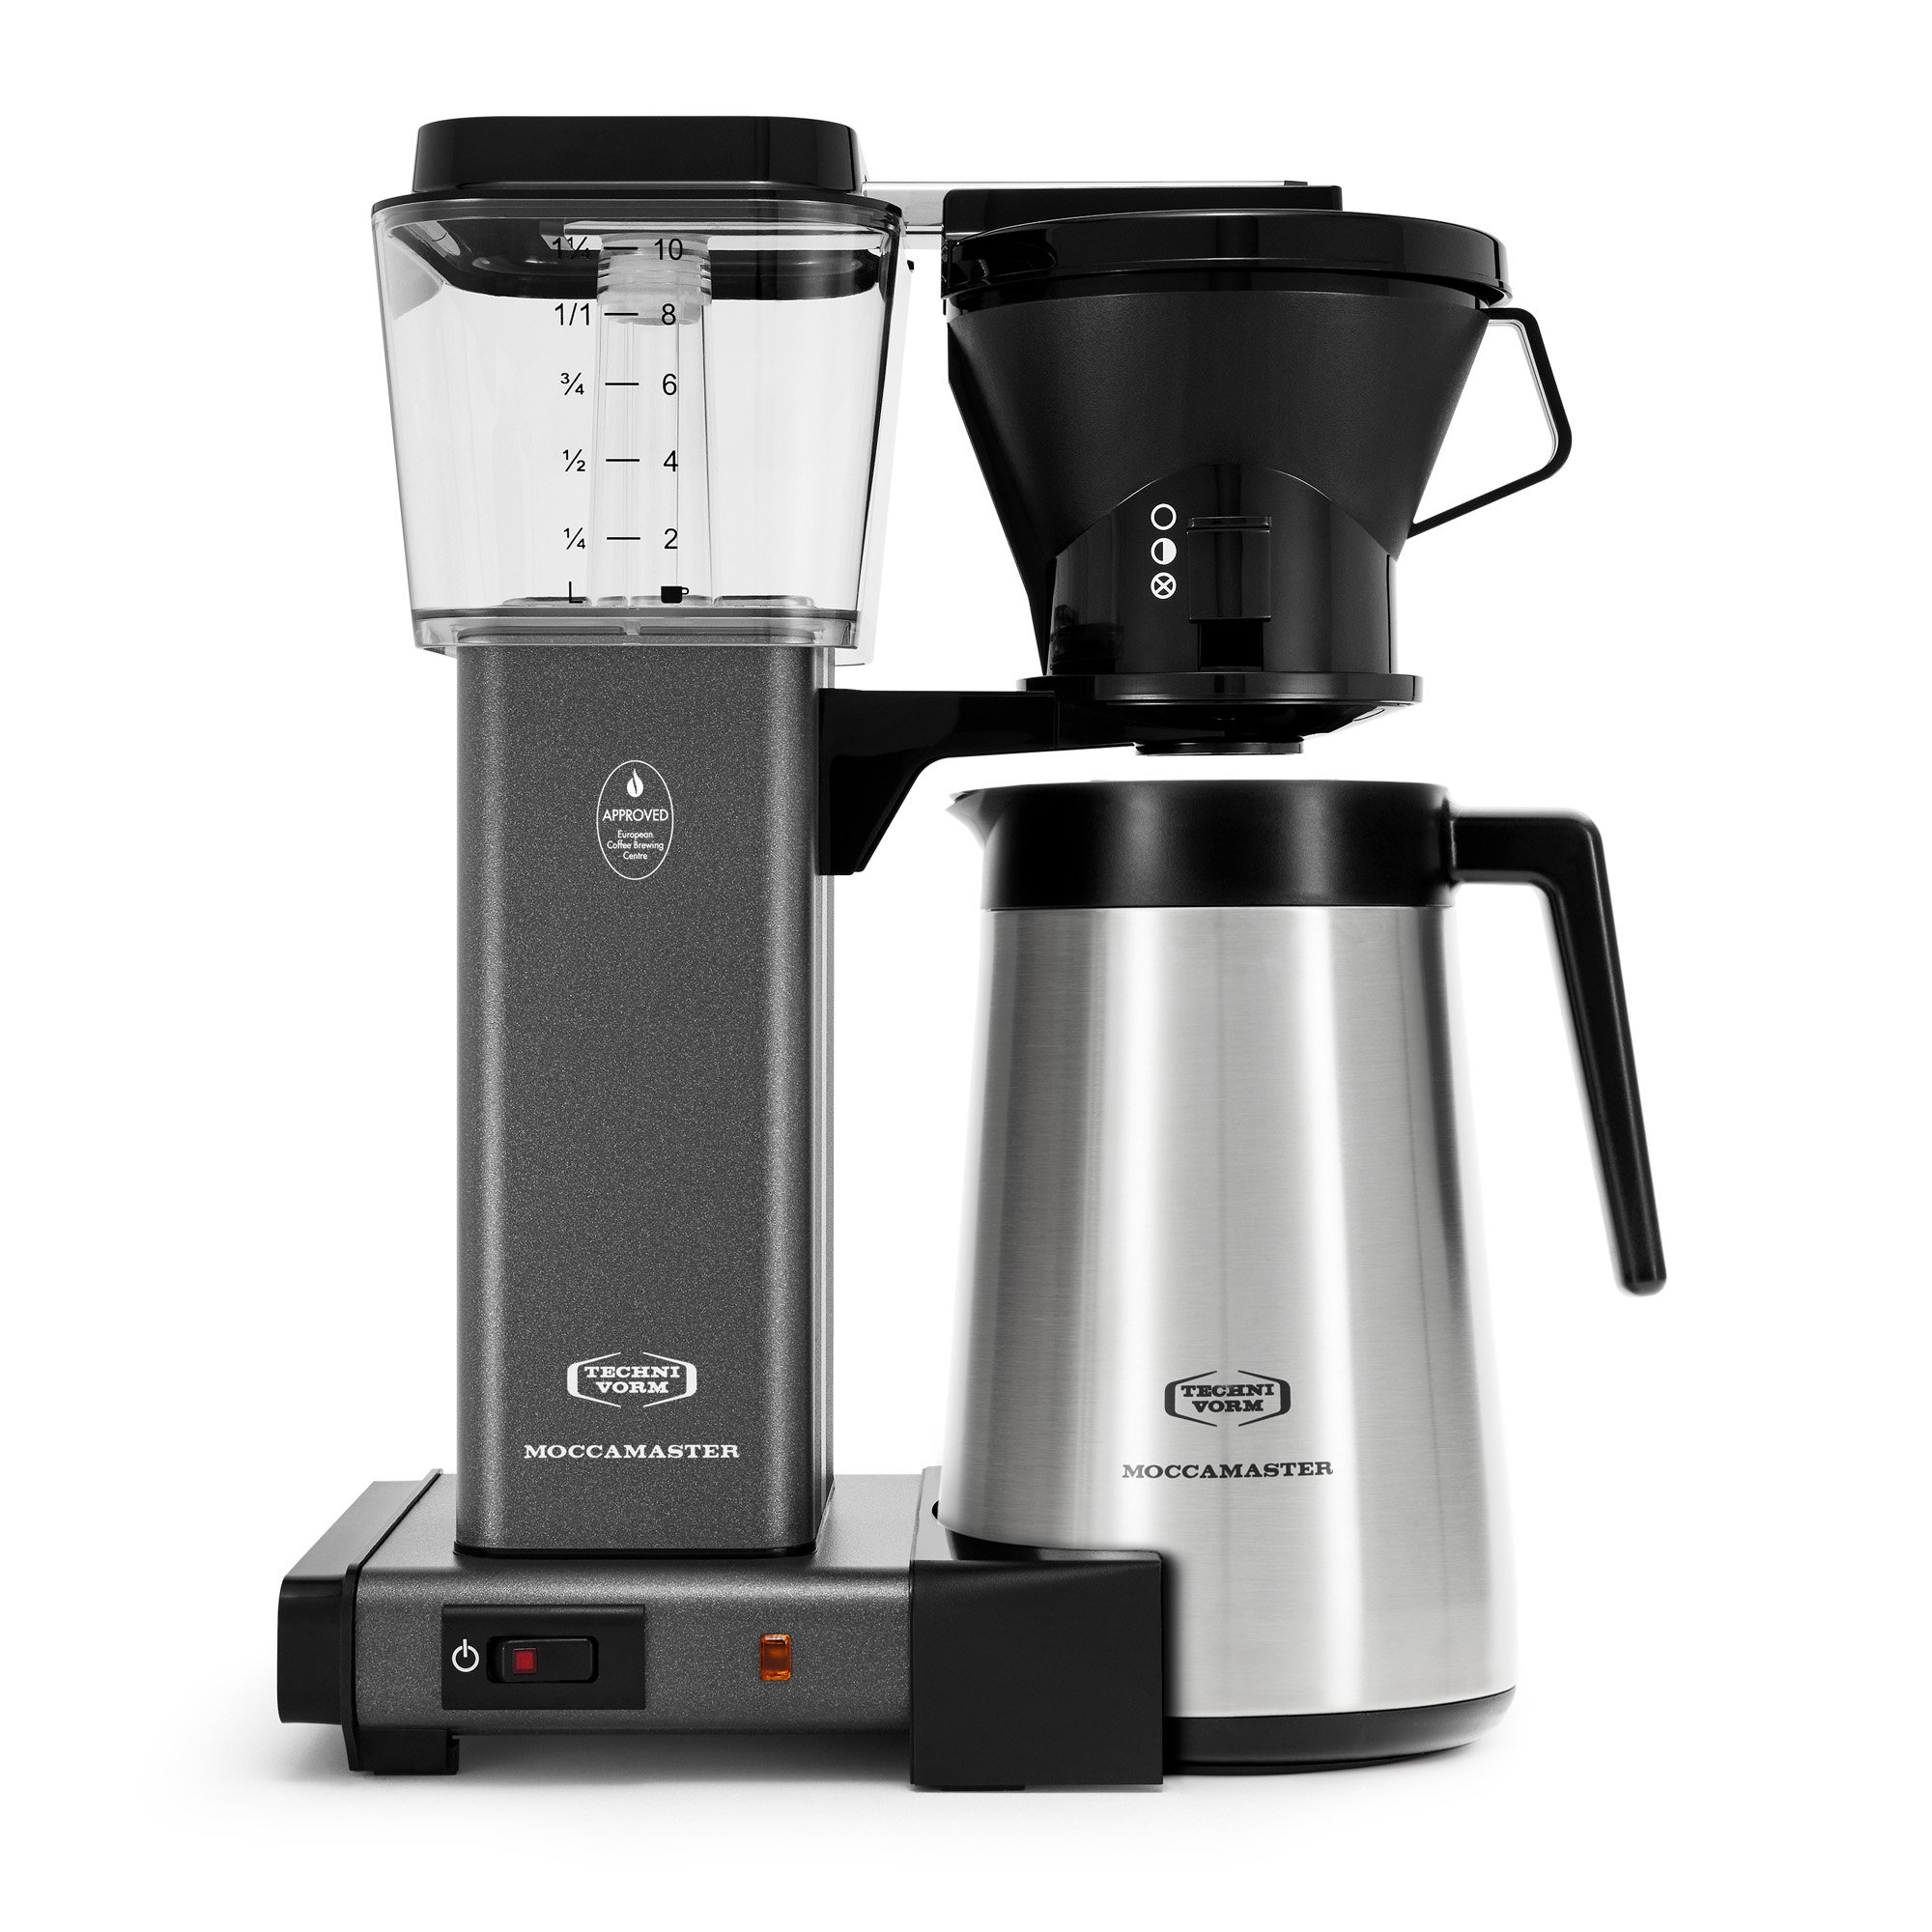 https://assets.wfcdn.com/im/68272205/compr-r85/2408/240879614/moccamaster-kbt-10-cup-coffee-maker.jpg